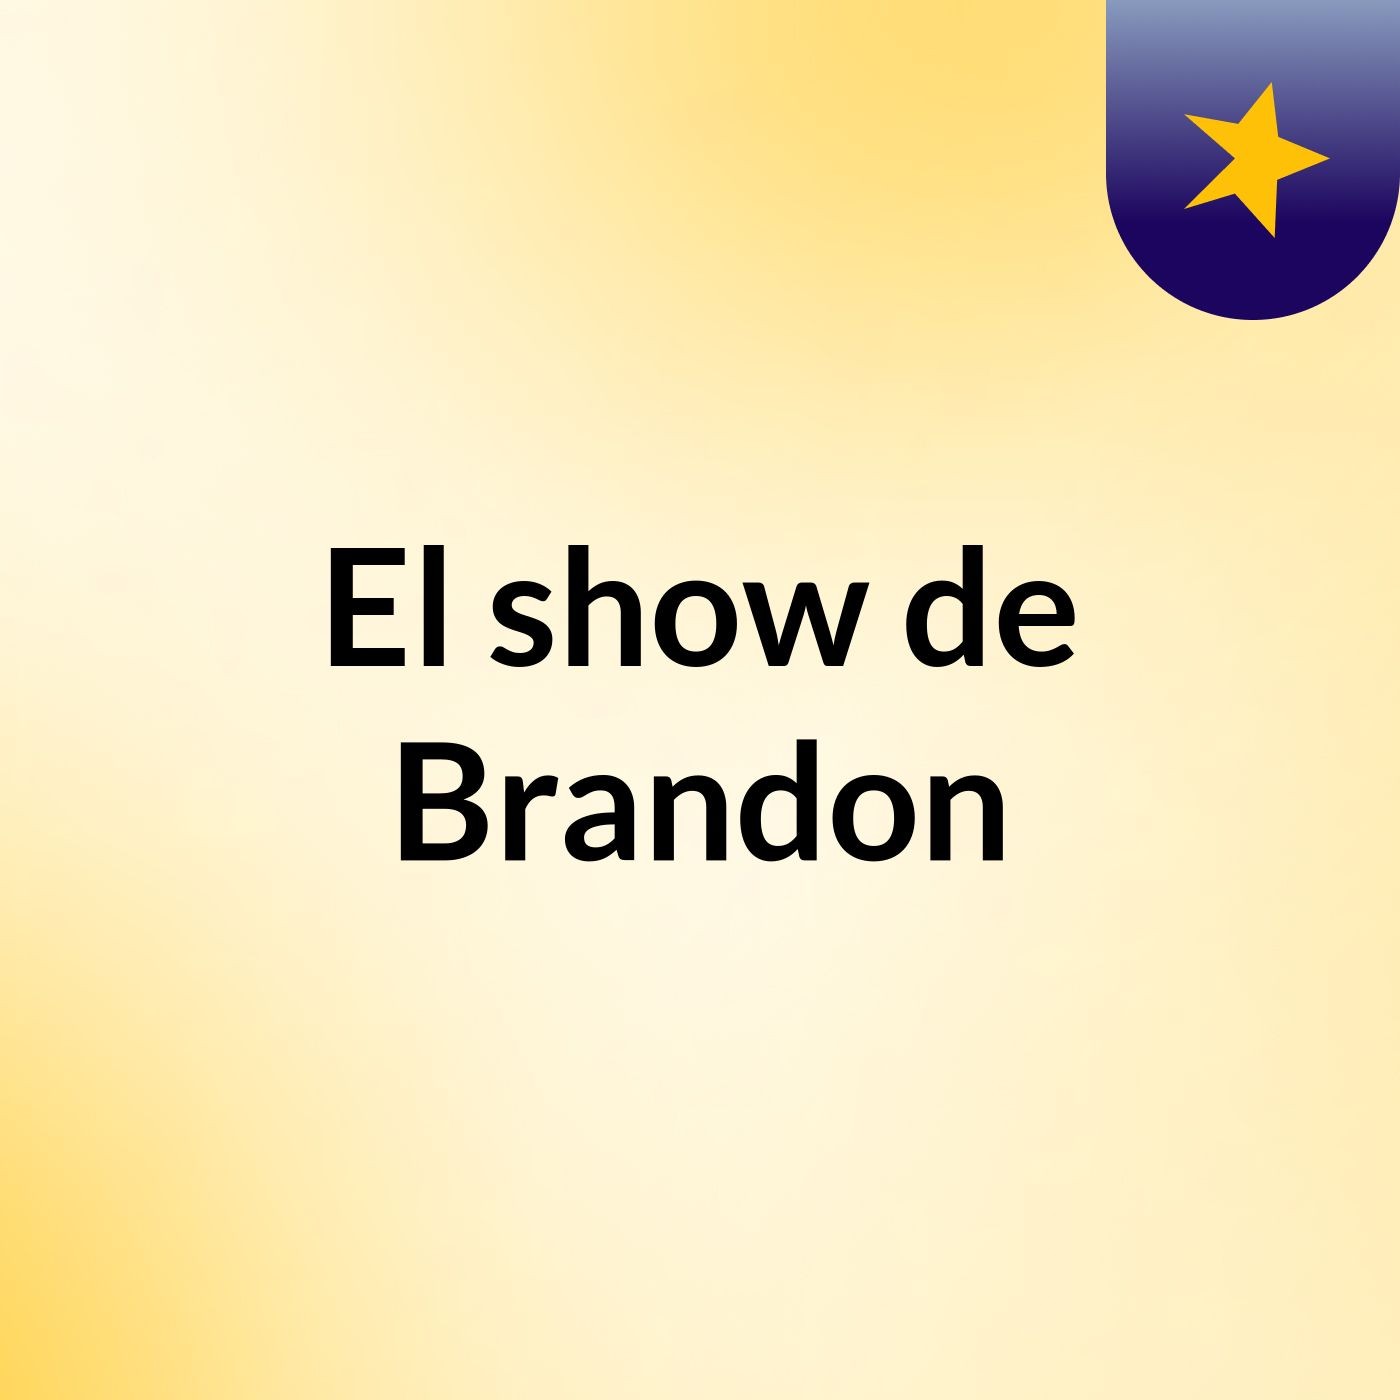 El show de Brandon